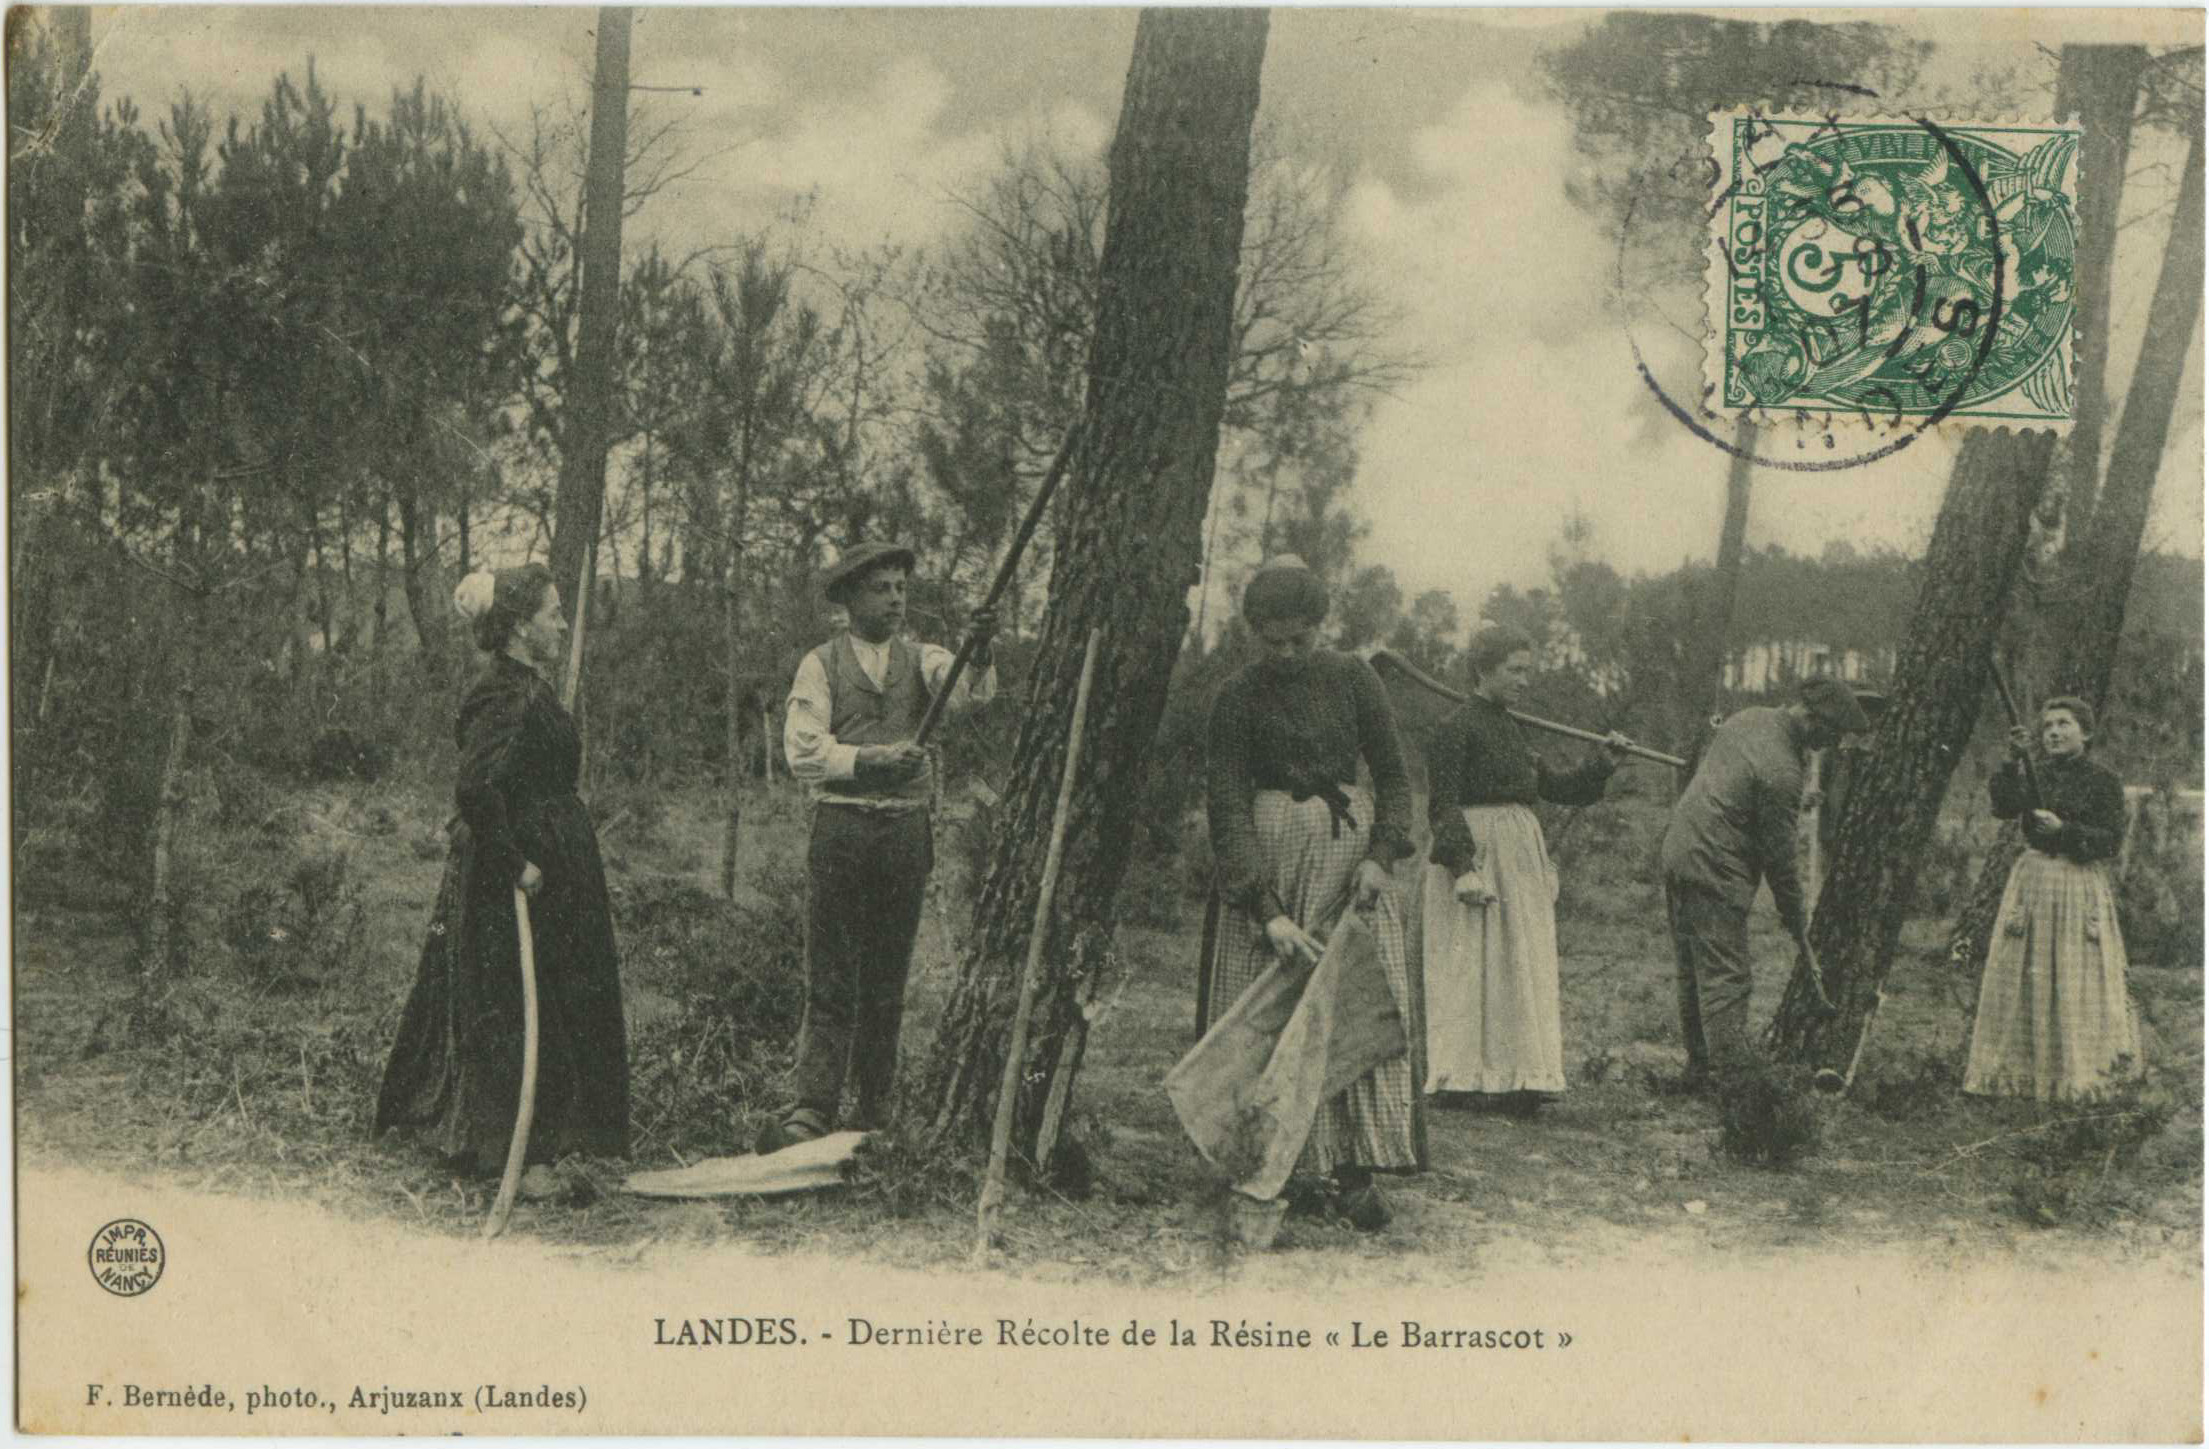 Landes - LANDES - Dernière Récolte de la Résine « Le Barrascot »